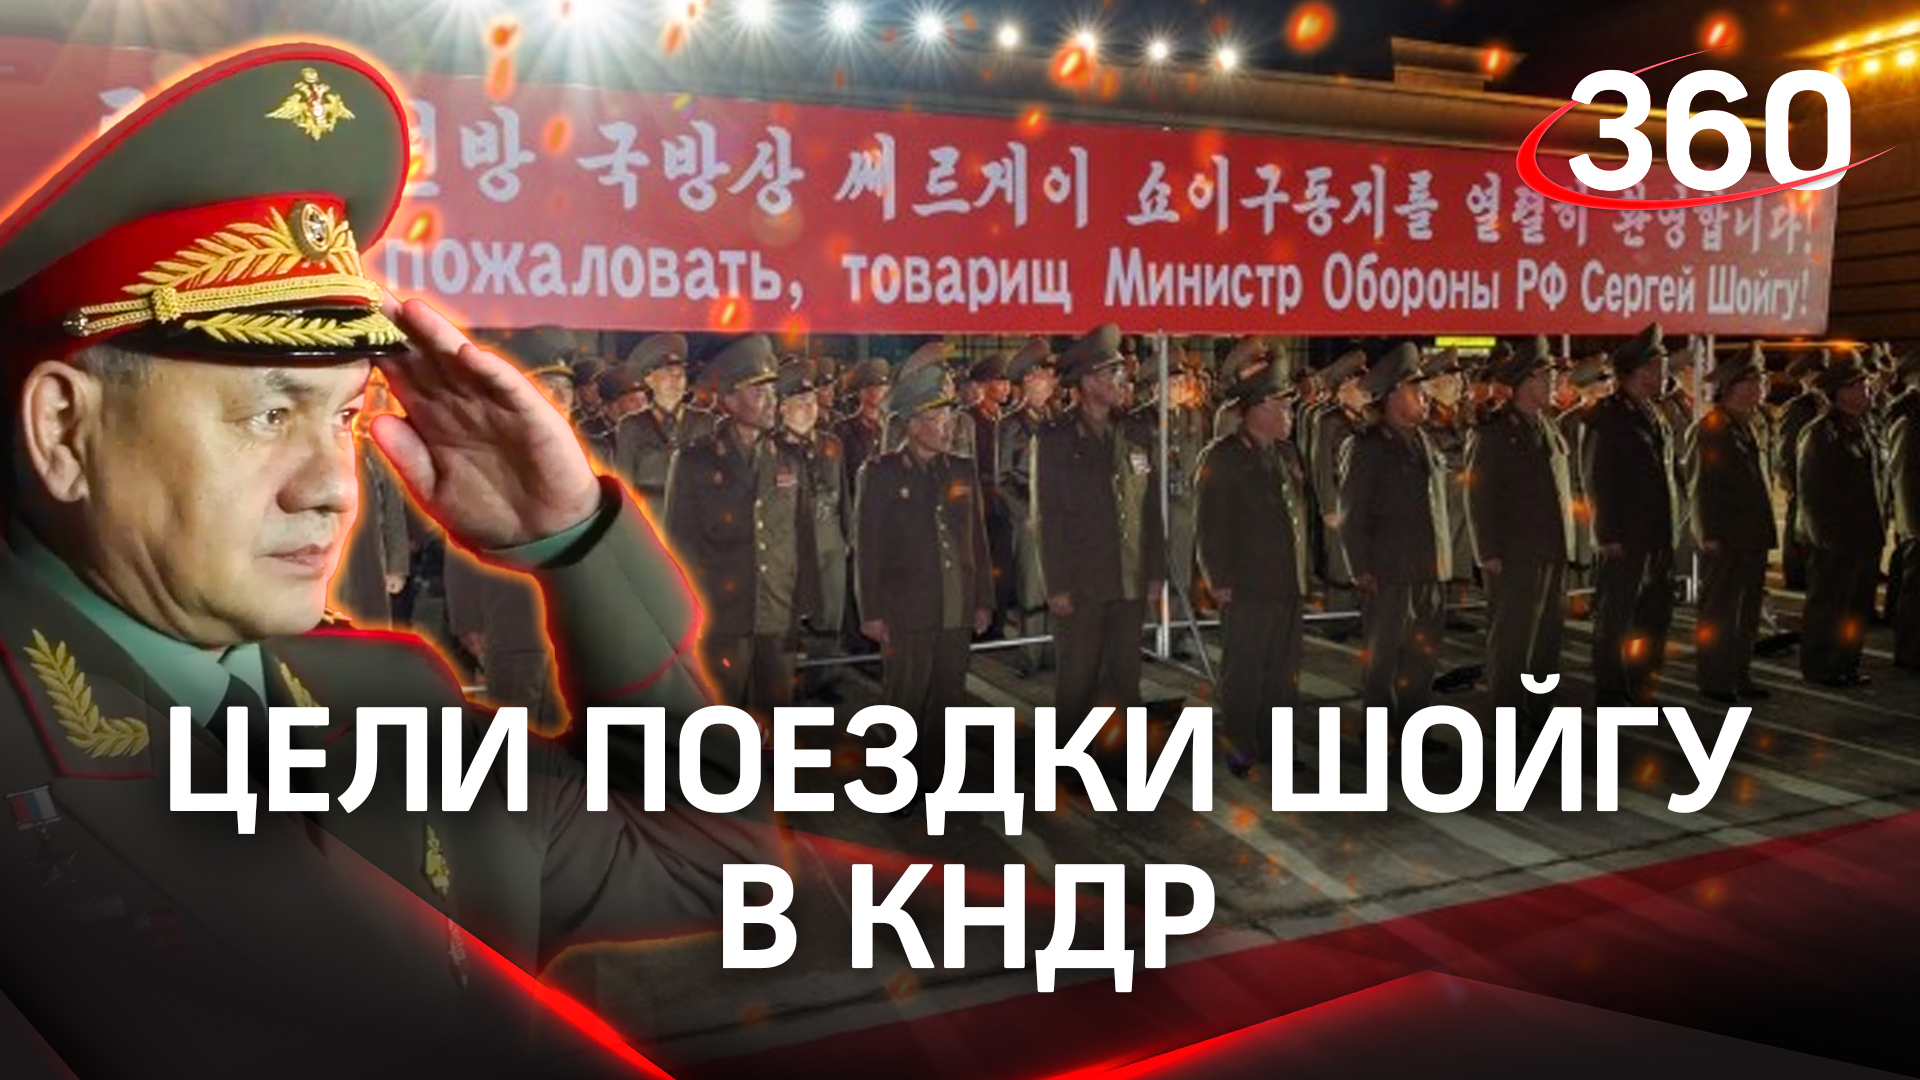 Шойгу в Северной Корее. Министра обороны РФ встретила рота почётного караула. Цели поездки в КНДР